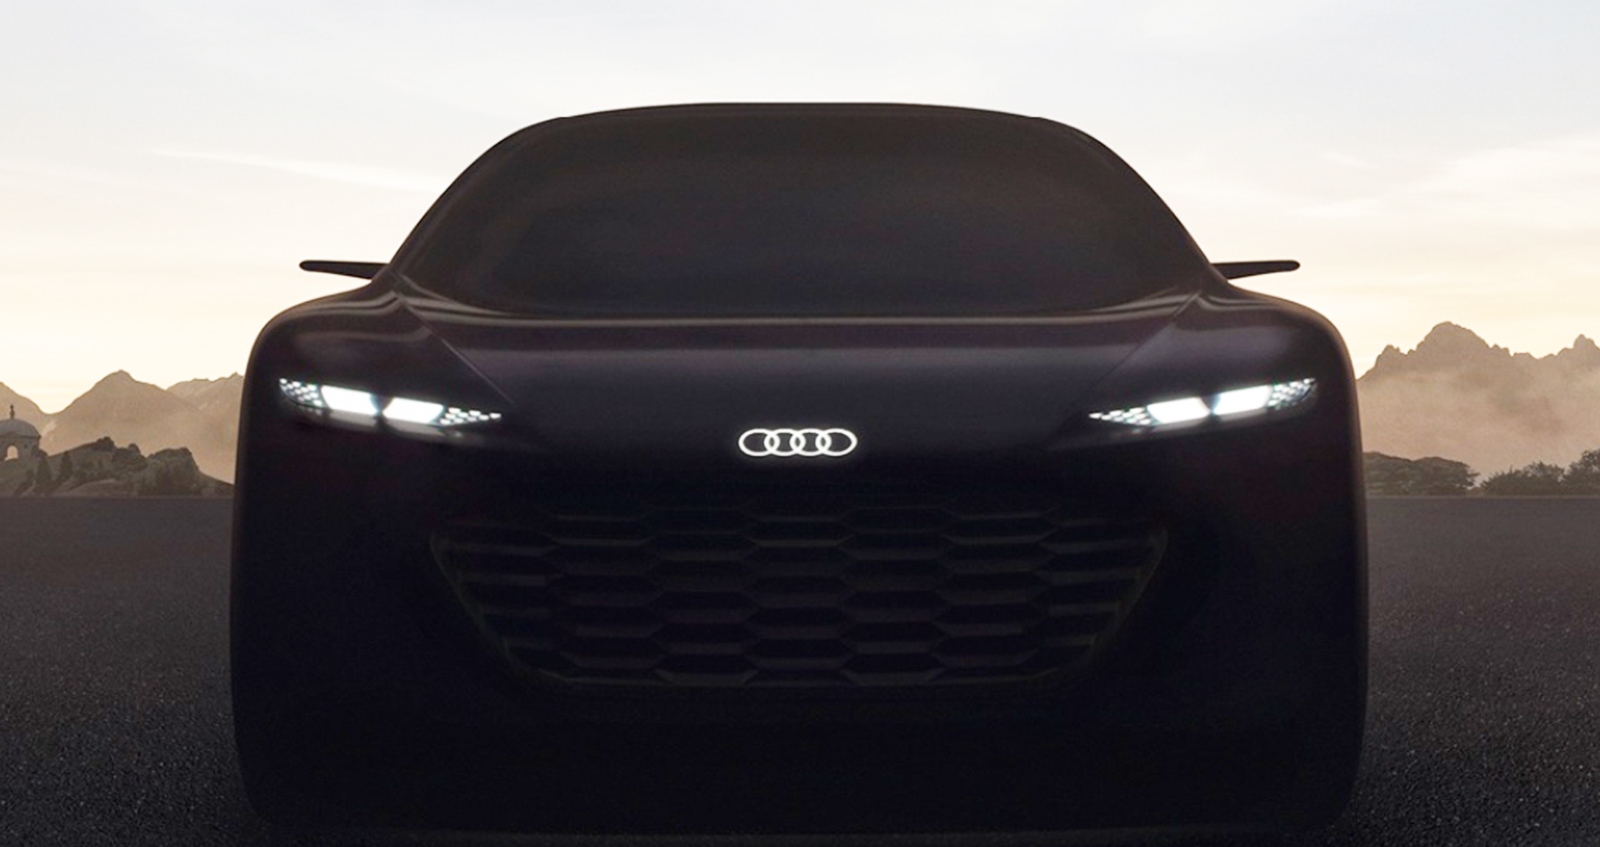 Audi Grandsphere L4 ตัวถังยาว ไร้พวงมาลัย ก่อนเปิดตัว 2 กันยายน 2021